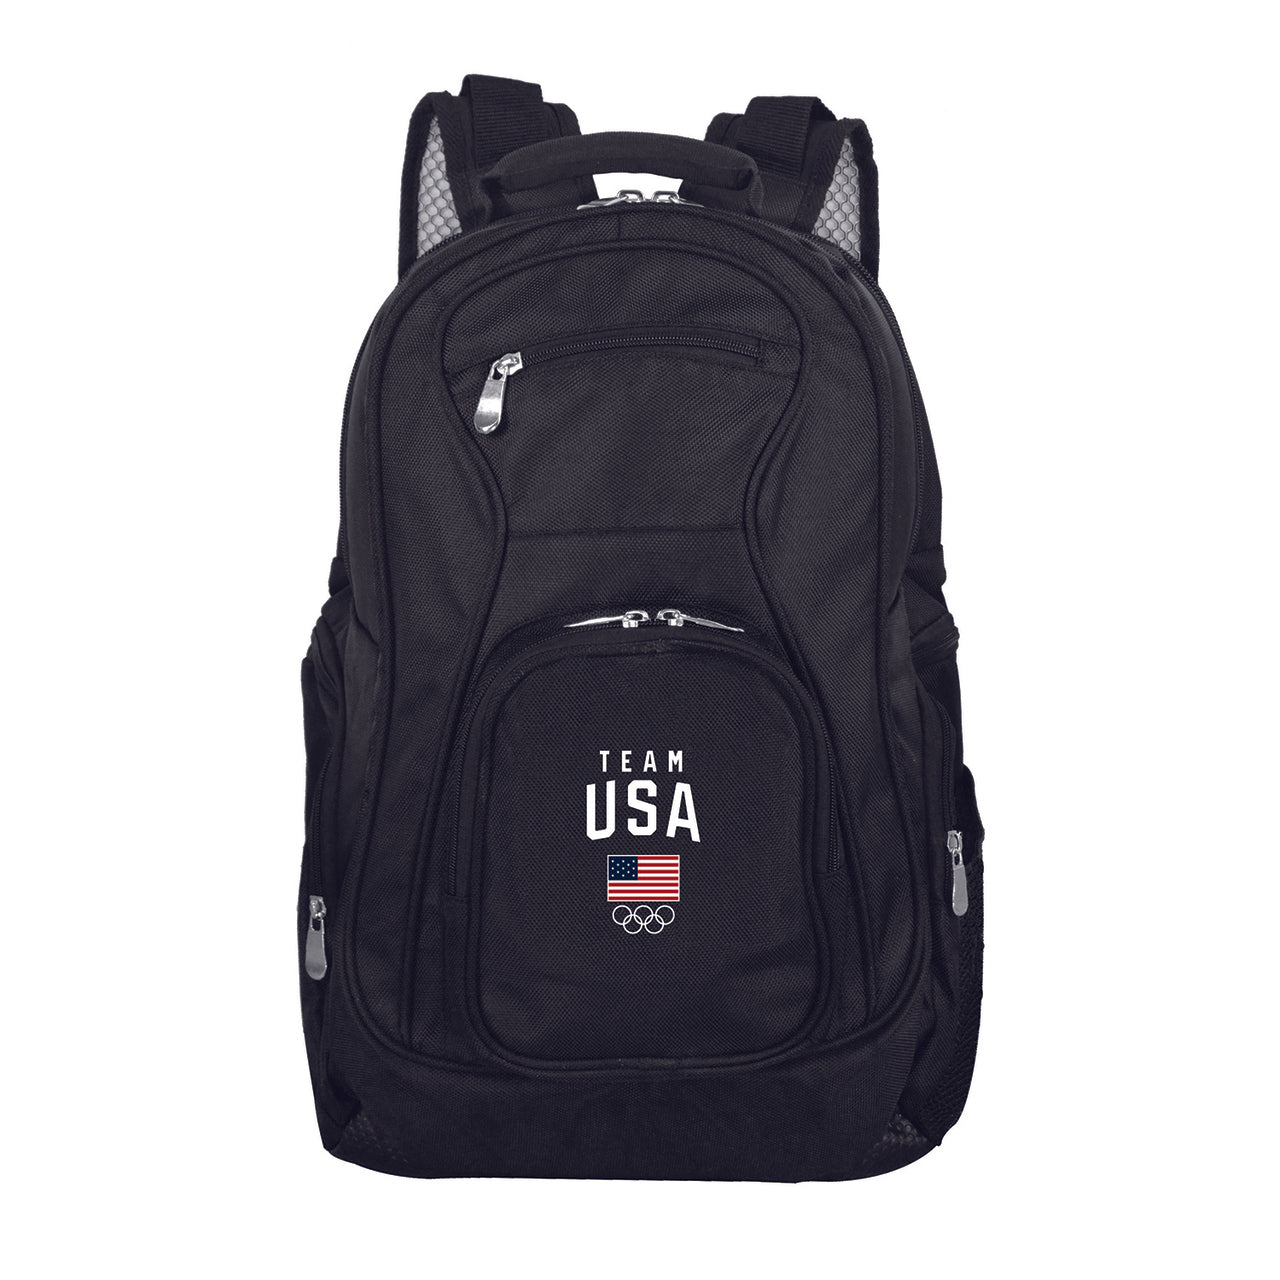 Team USA Laptop Backpack Black